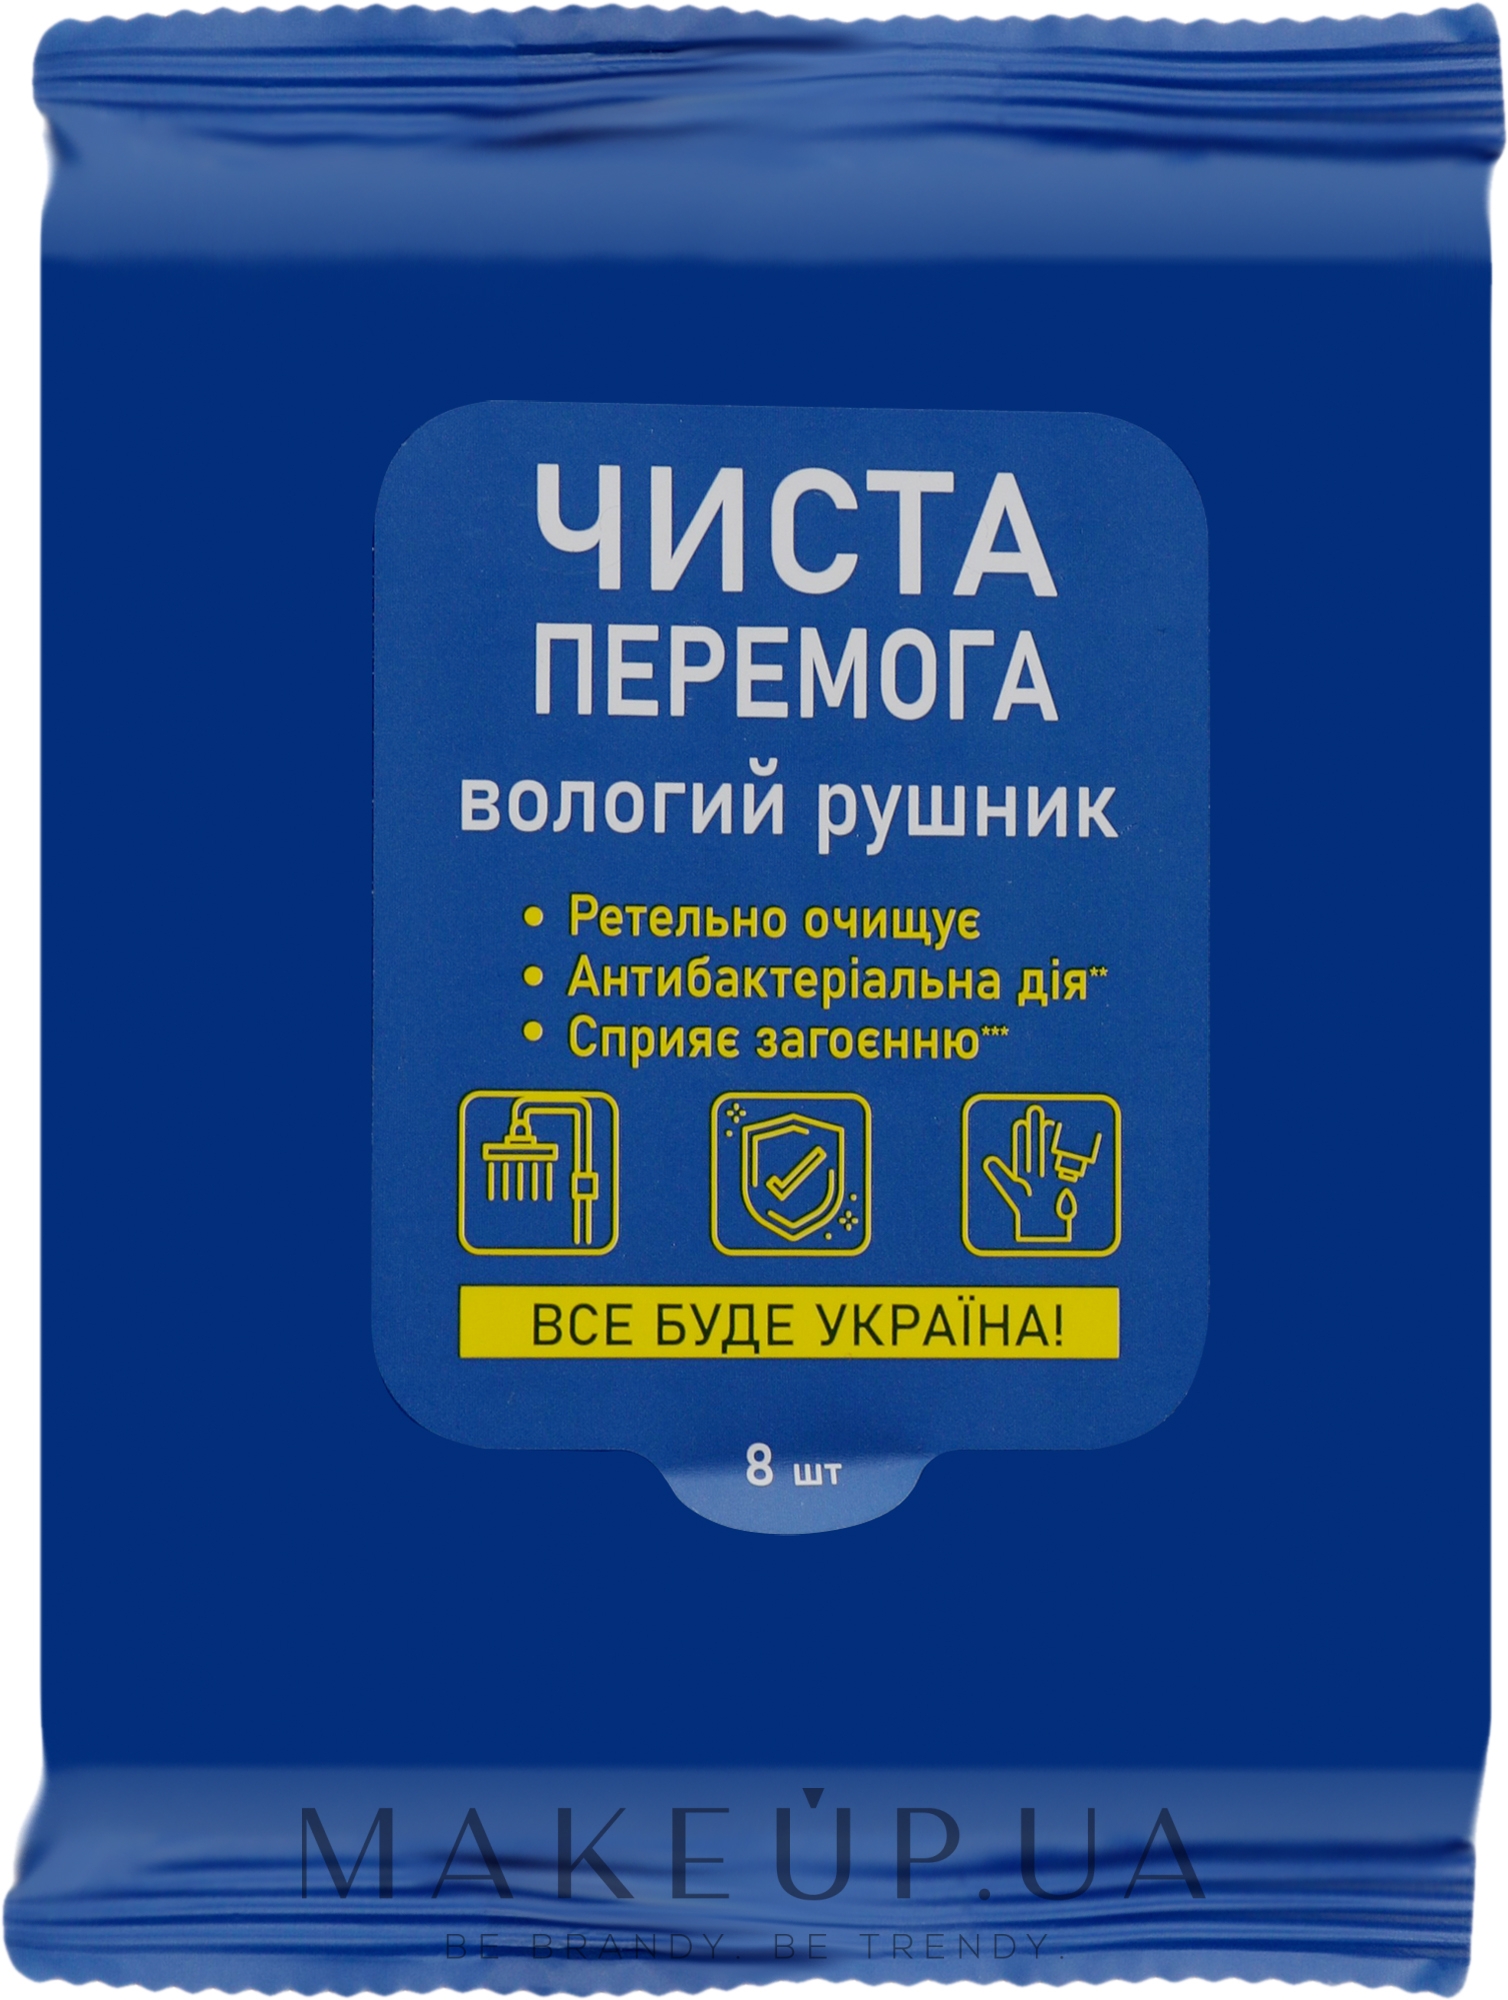 Влажные салфетки антибактериальные, 8шт, синяя упаковка - Чиста Перемога — фото 8шт